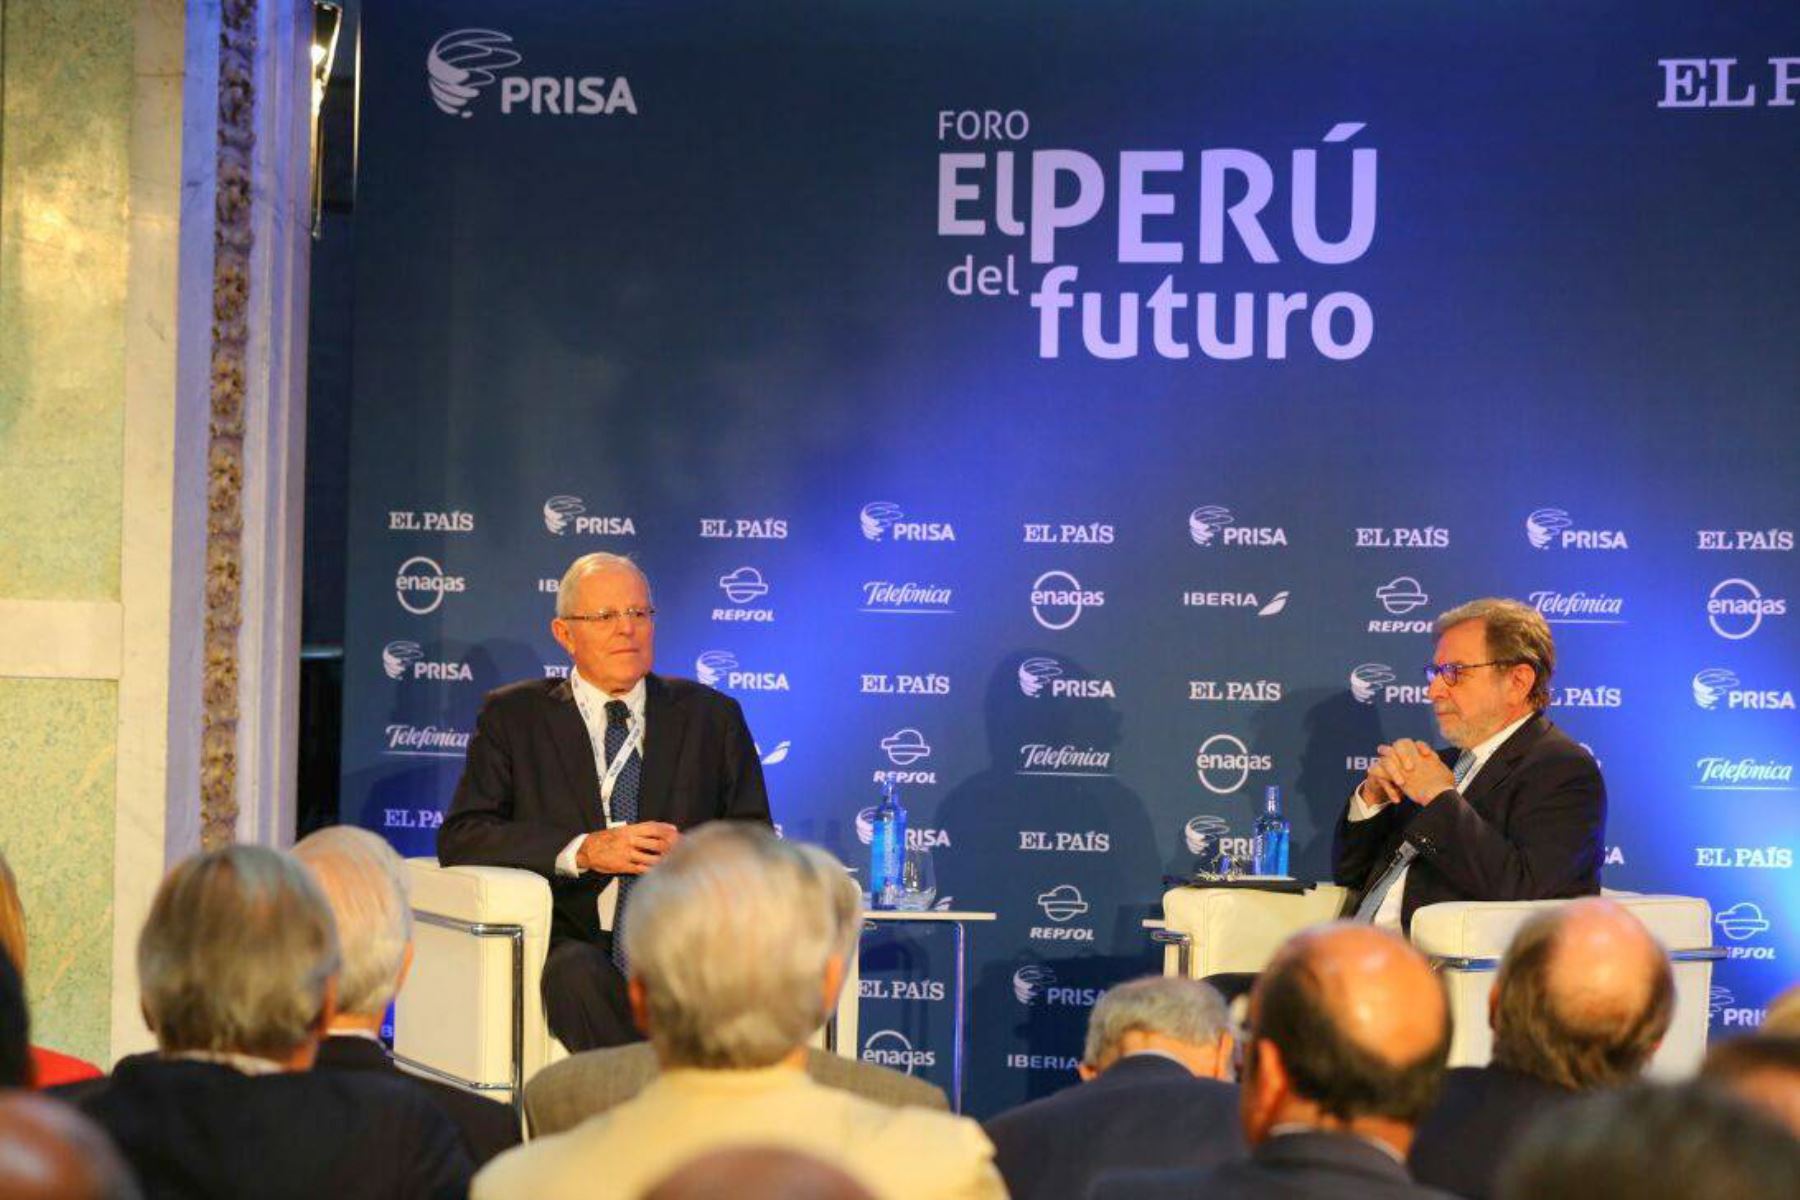 El jefe del Estado, Pedro Pablo Kuczynski, participa del foro “El Perú del Futuro”, organizado por el Grupo Prisa, en Madrid. Foto: ANDINA/ Andres Valle - Presidencia